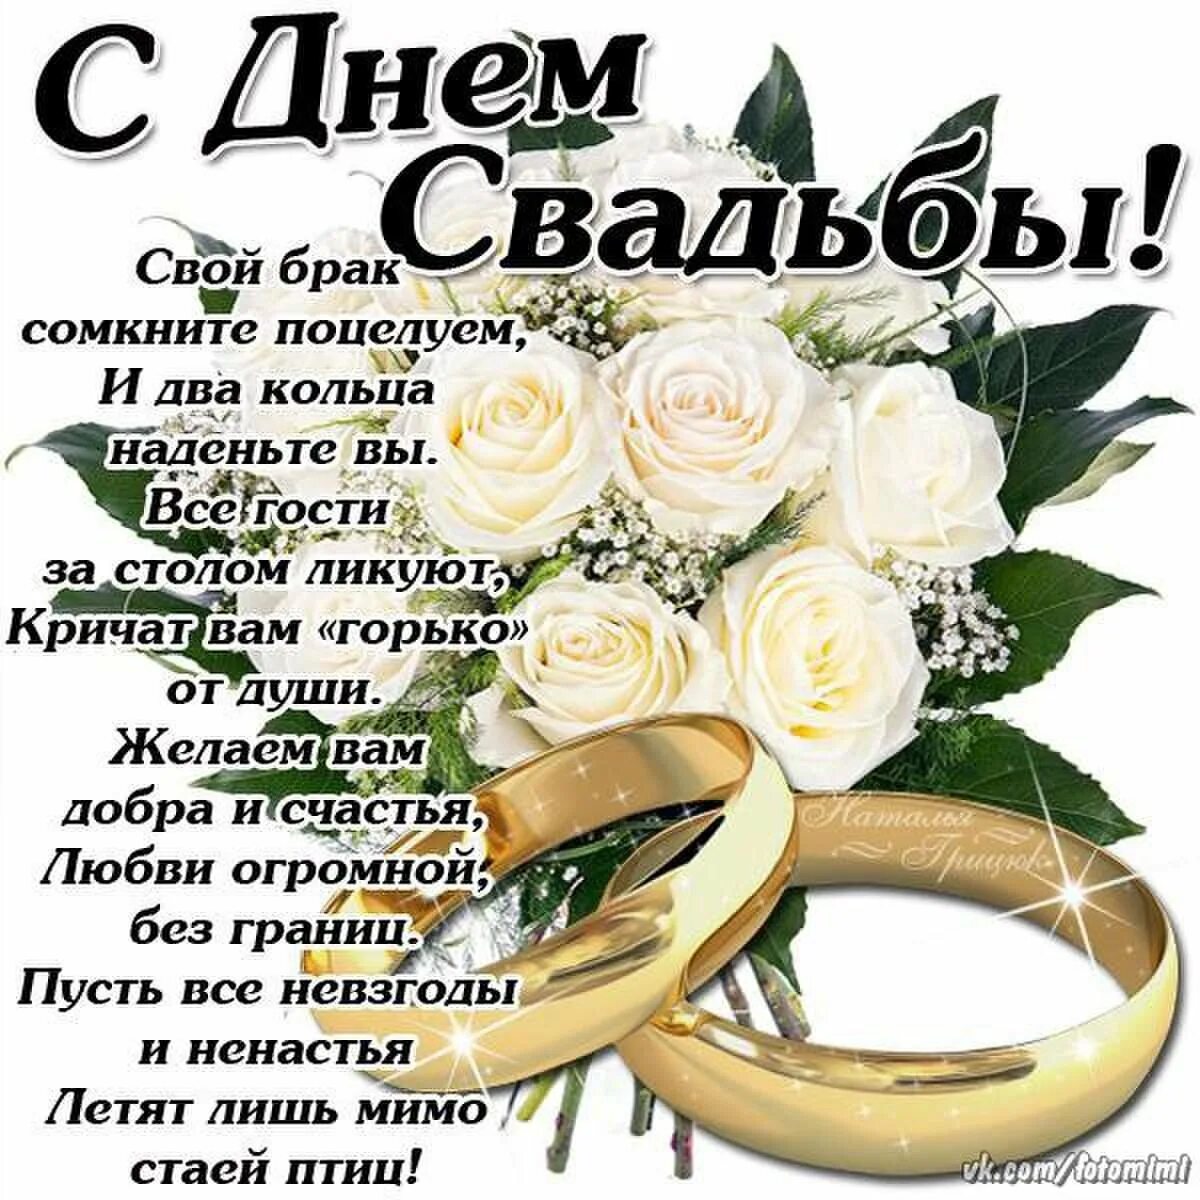 Удачный день свадьбы. С днём свадьбы поздравления. Поздравления с днём свадьбы красивые. Поздравления со свадьбой в стихах. Поздравления со свадьбой красивые.